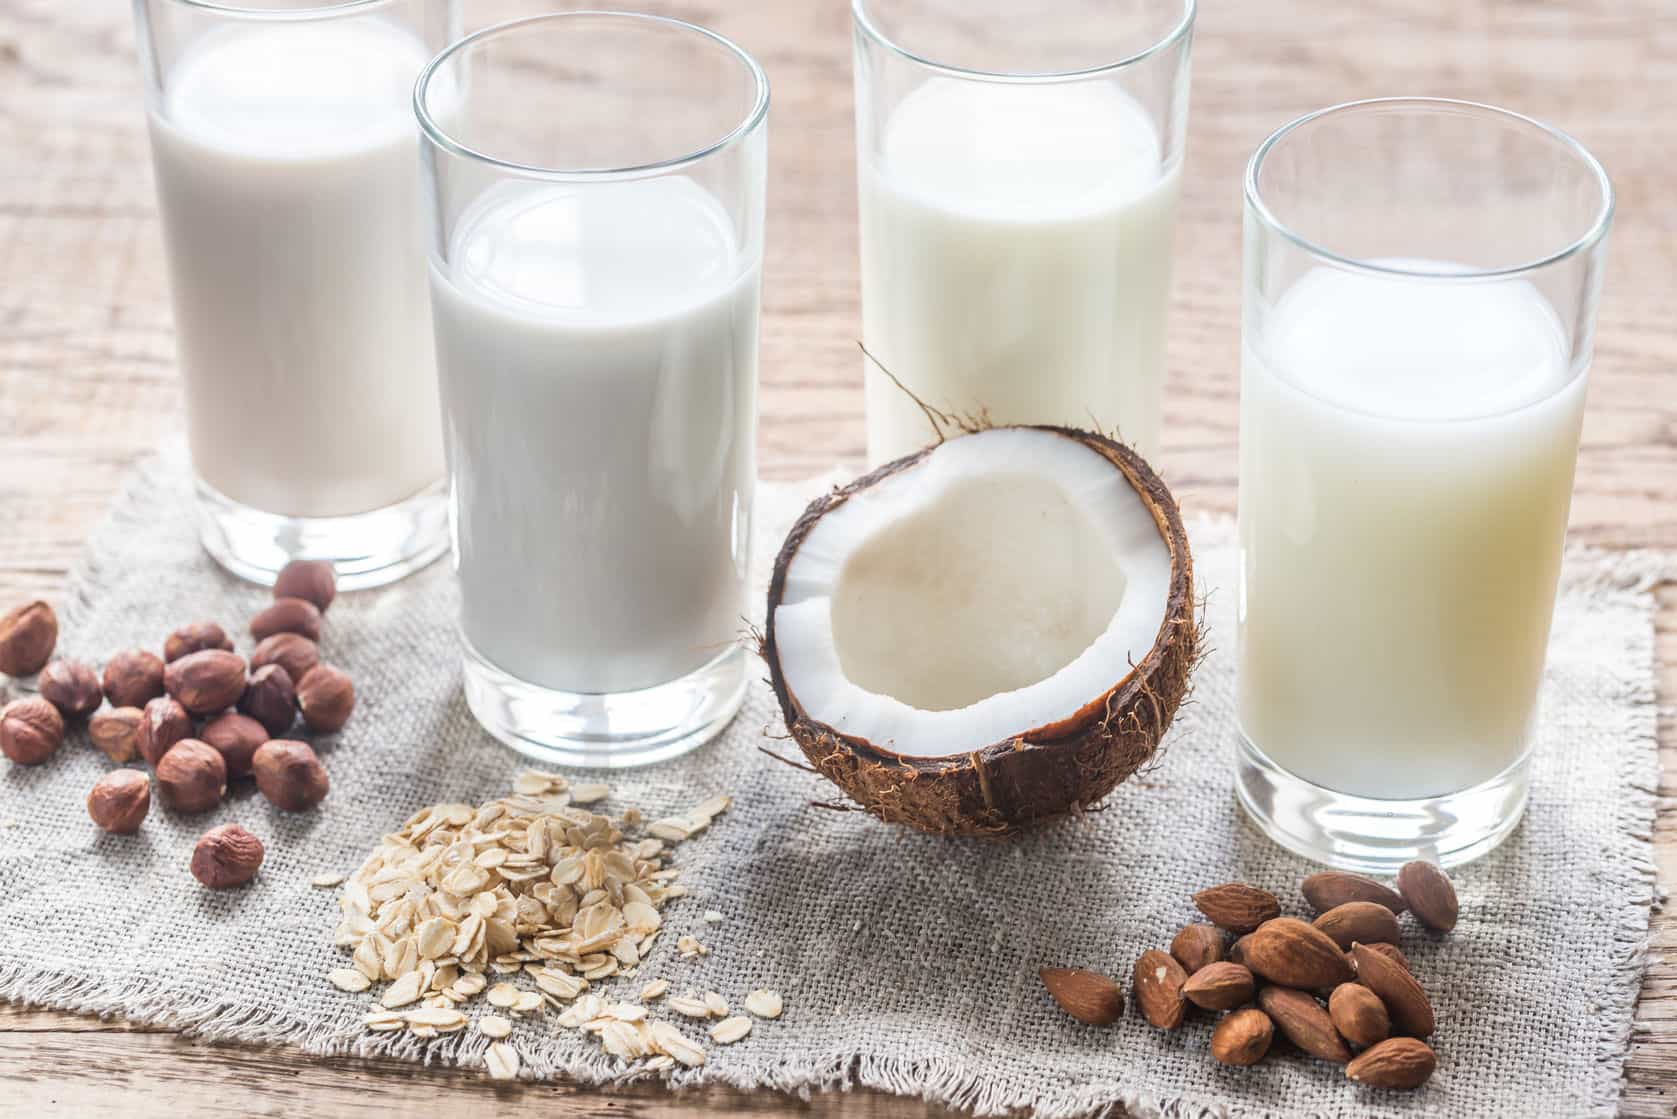 vitamin D benefits - vitamin D rich foods - non dairy milk